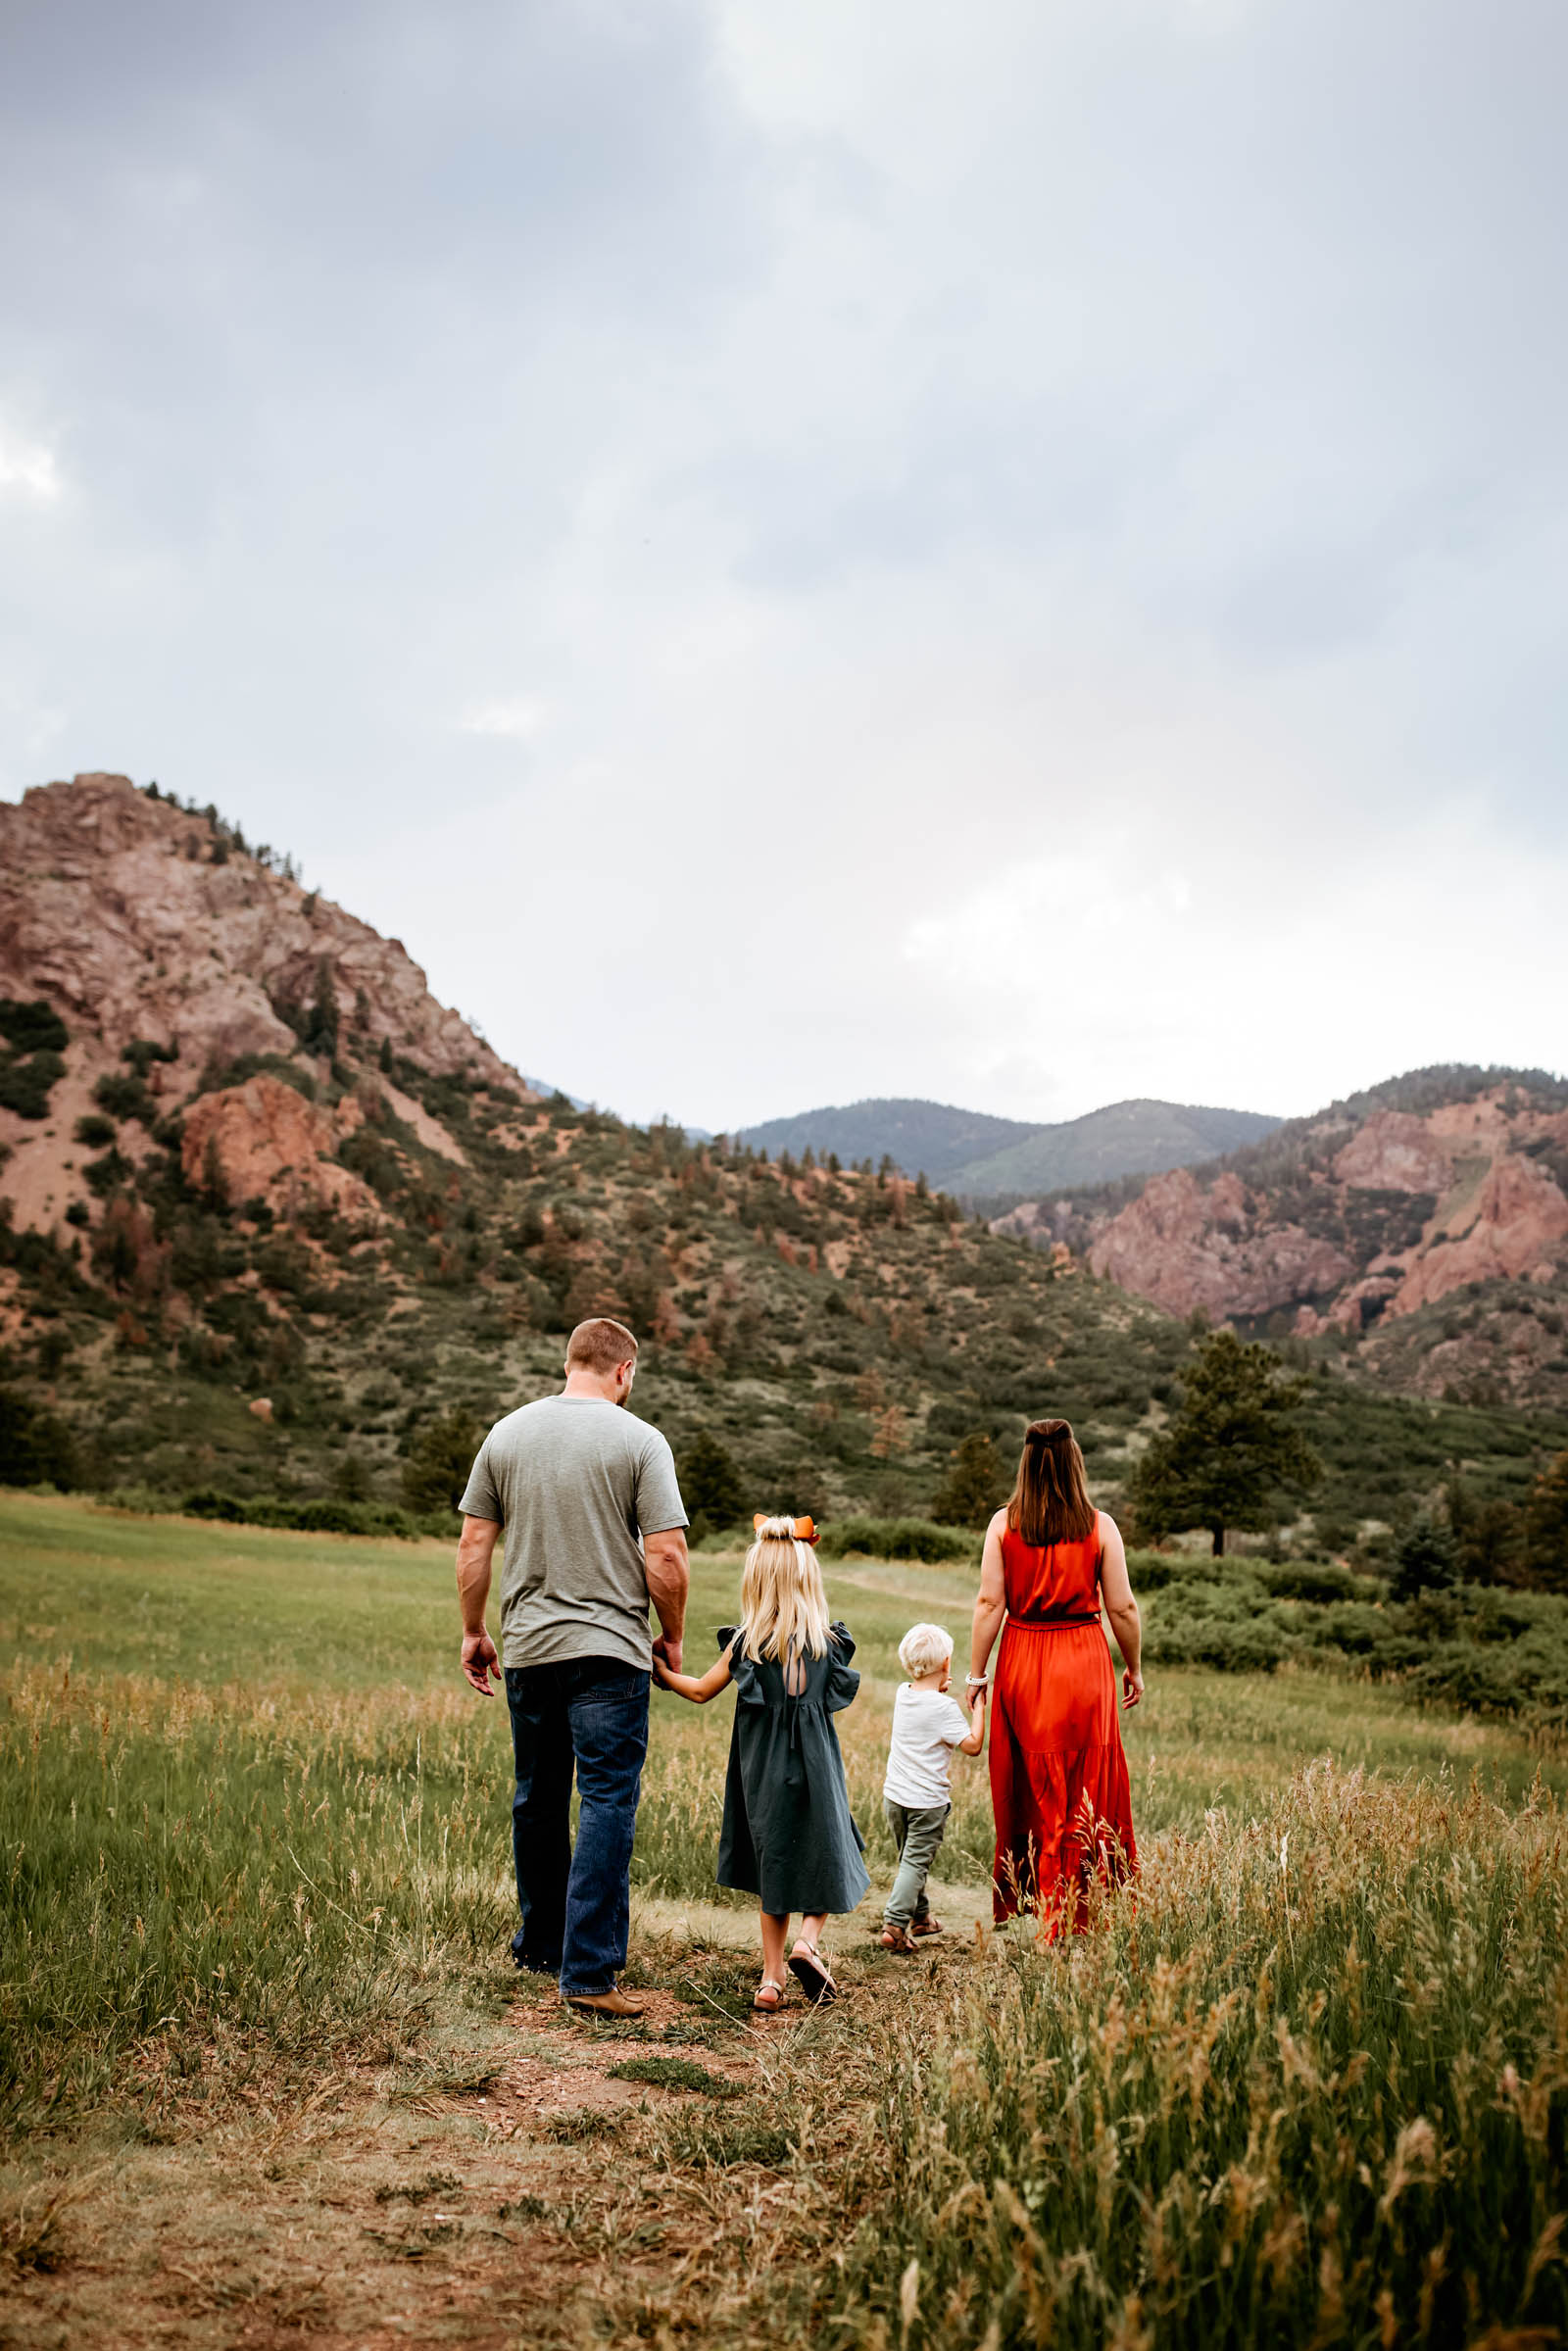 Family Photos with Mountain Views